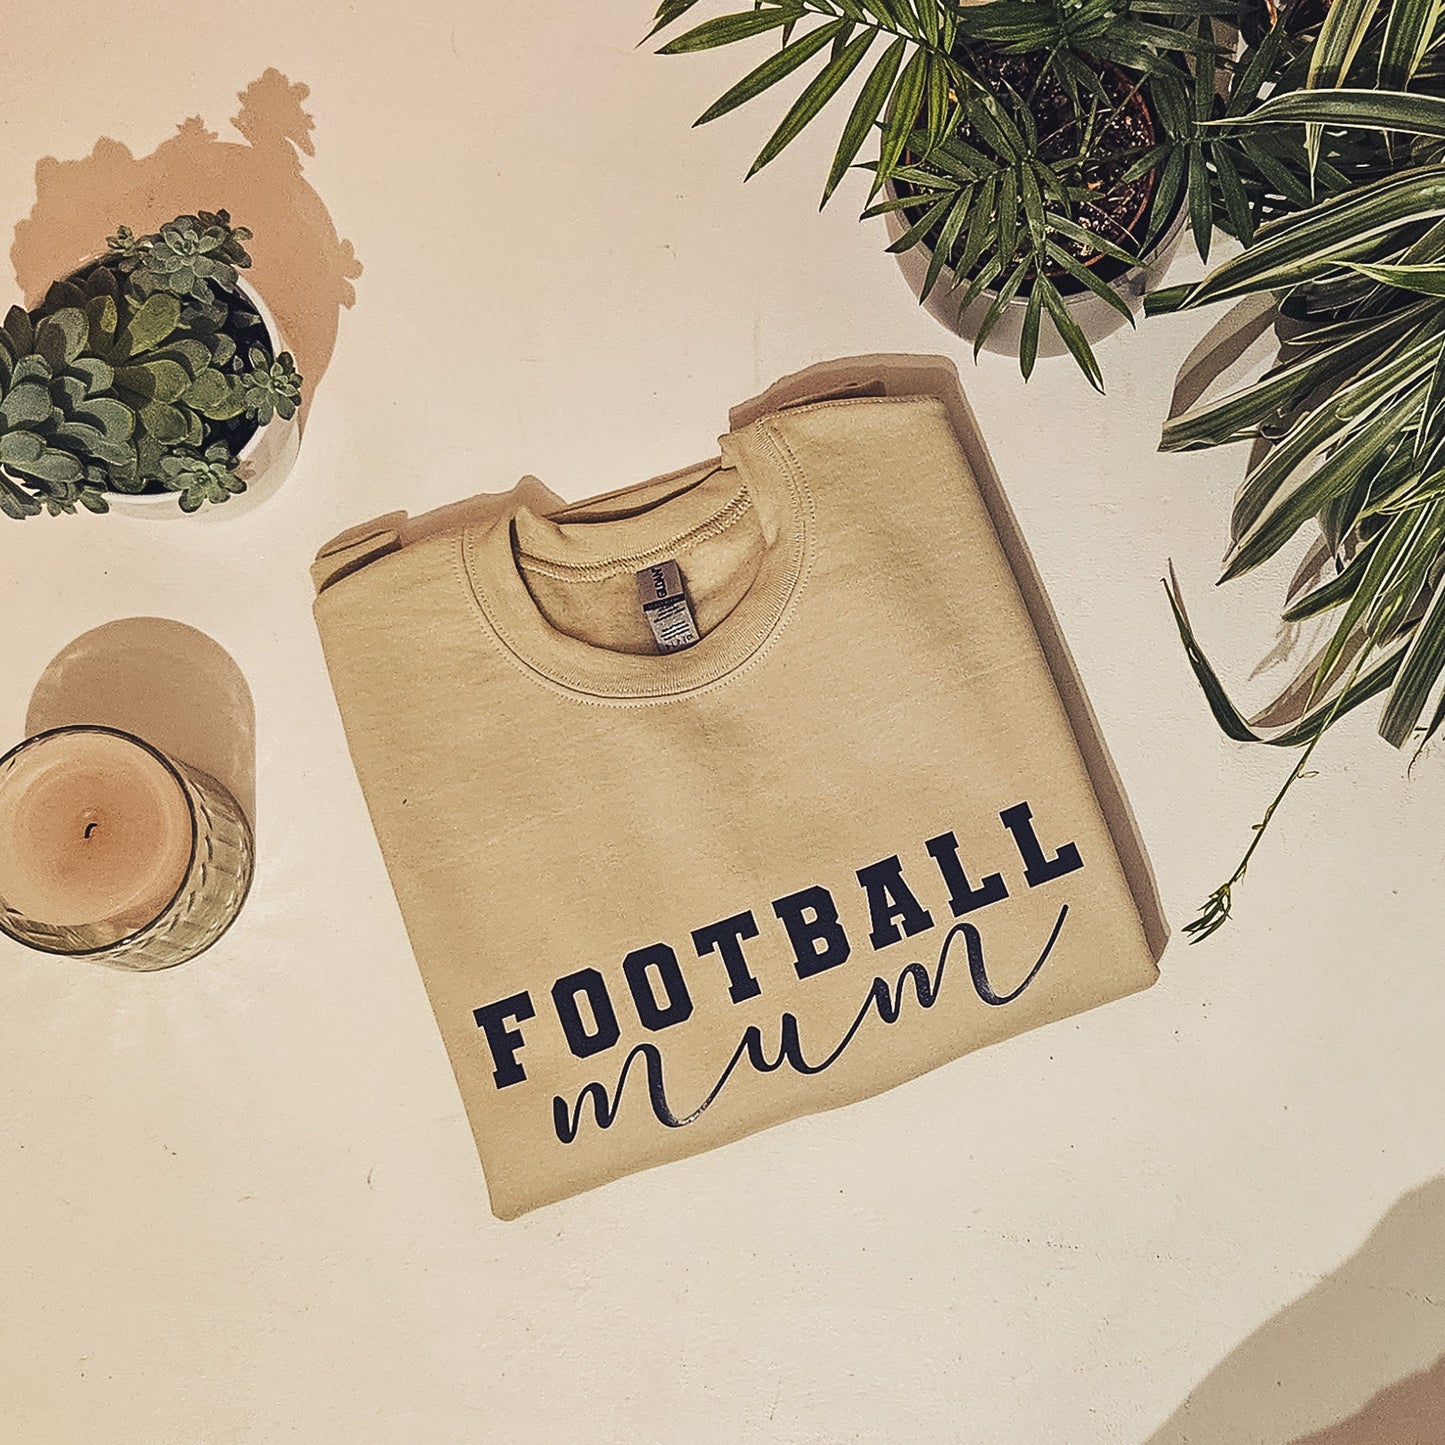 Football Mum Jumper - F&B Crafts - Fox & Co Apparel